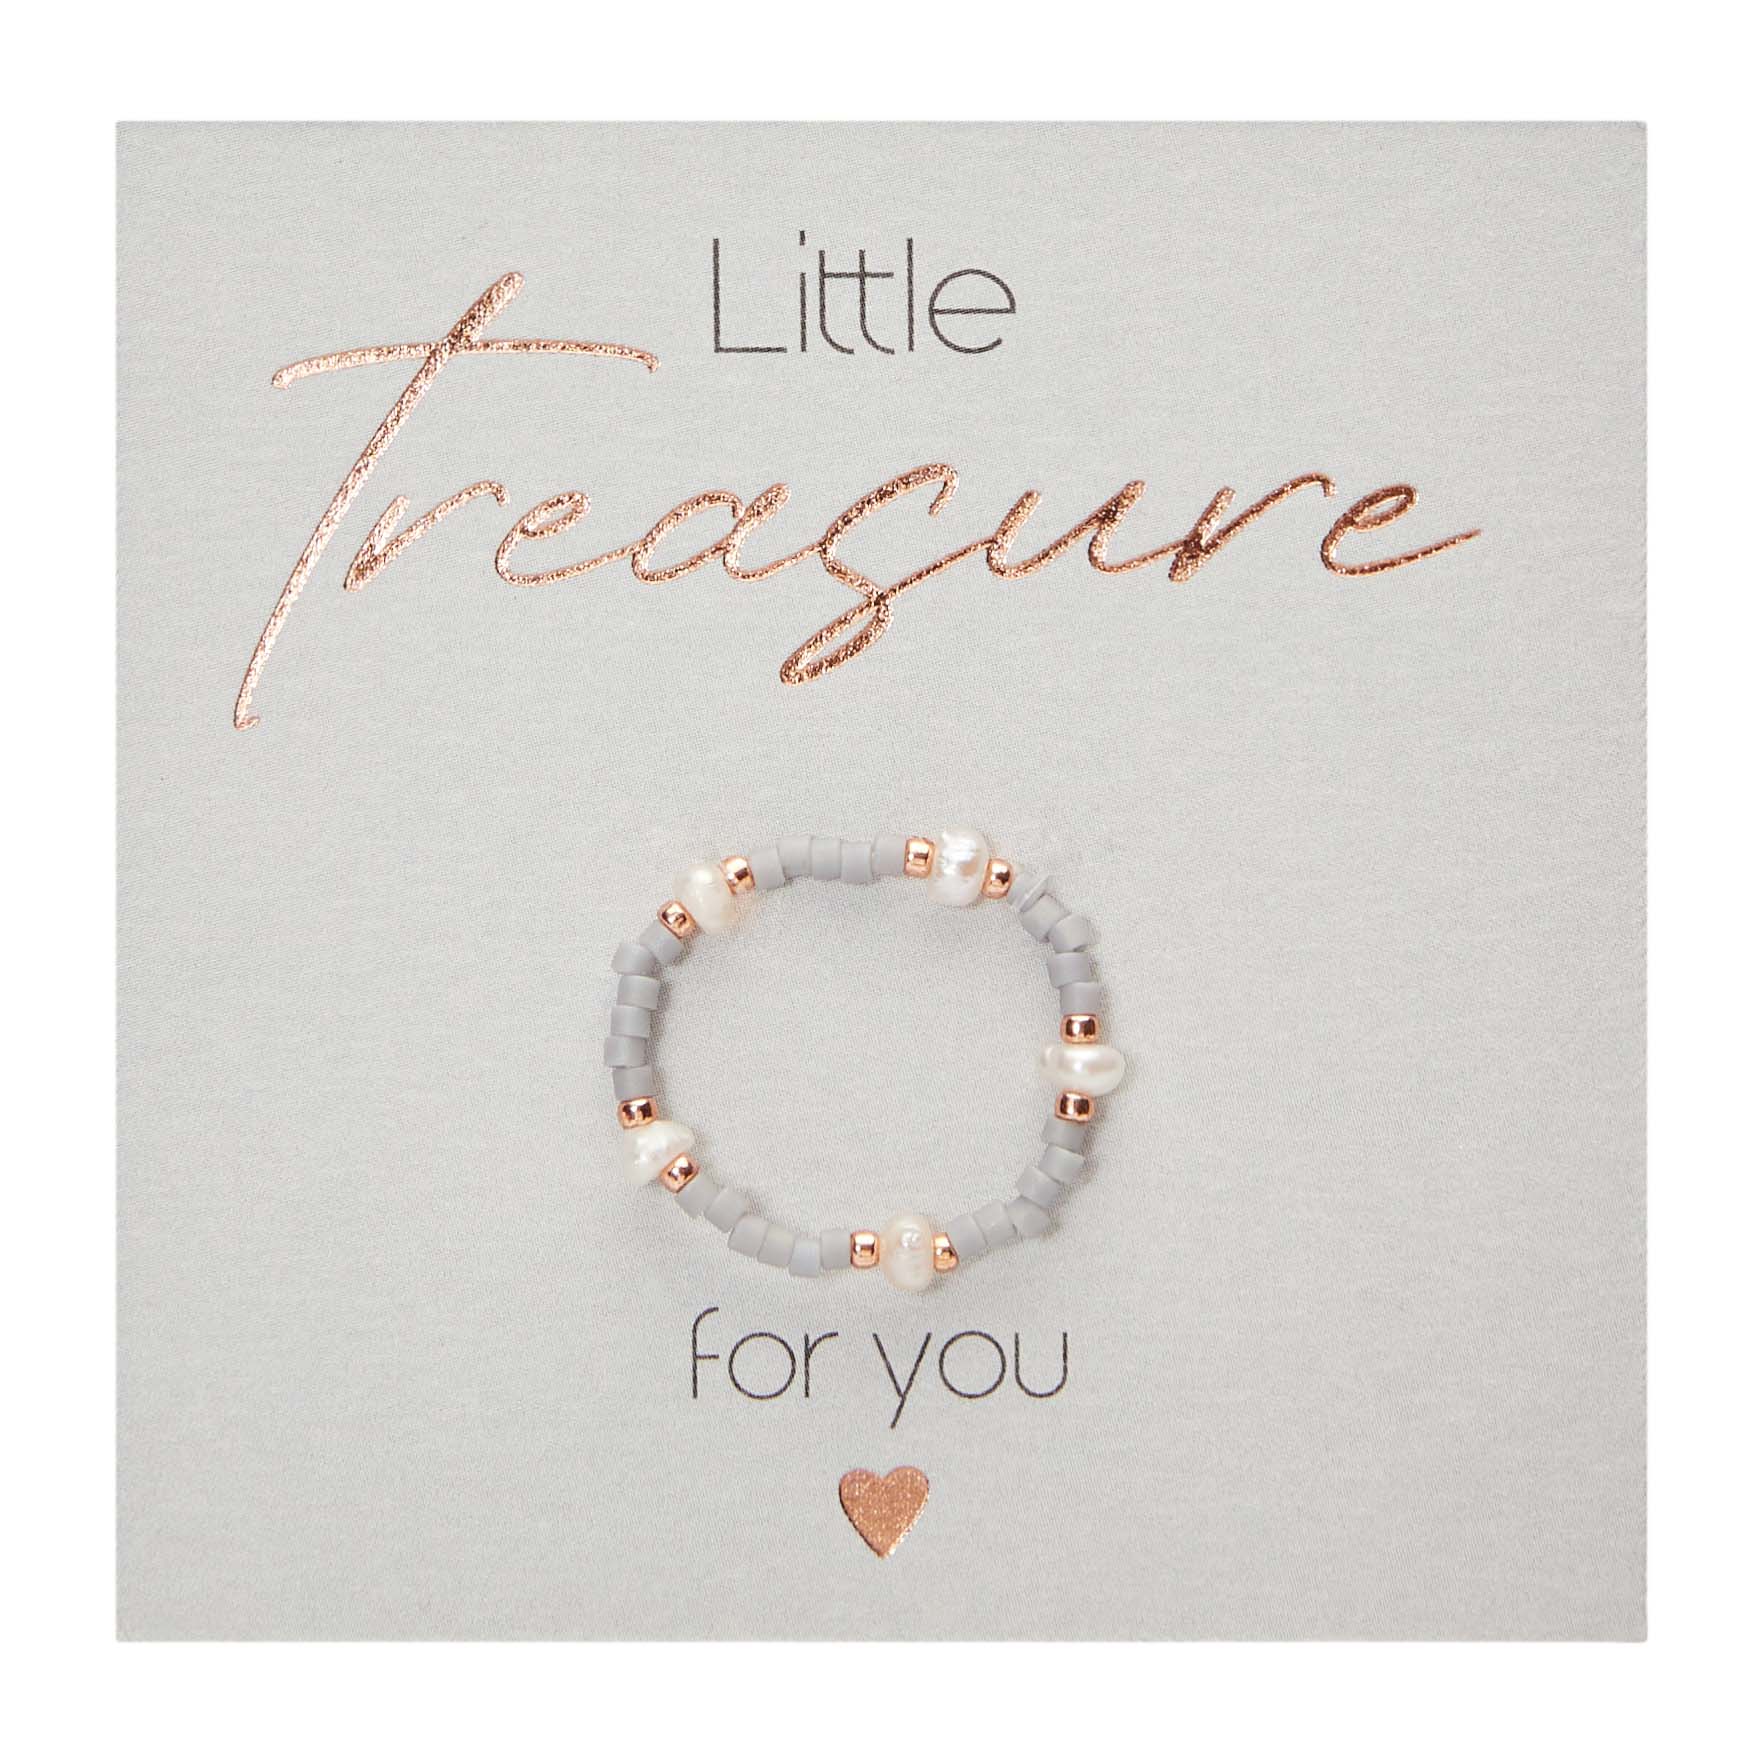 Display rings - "Little Treasure" 